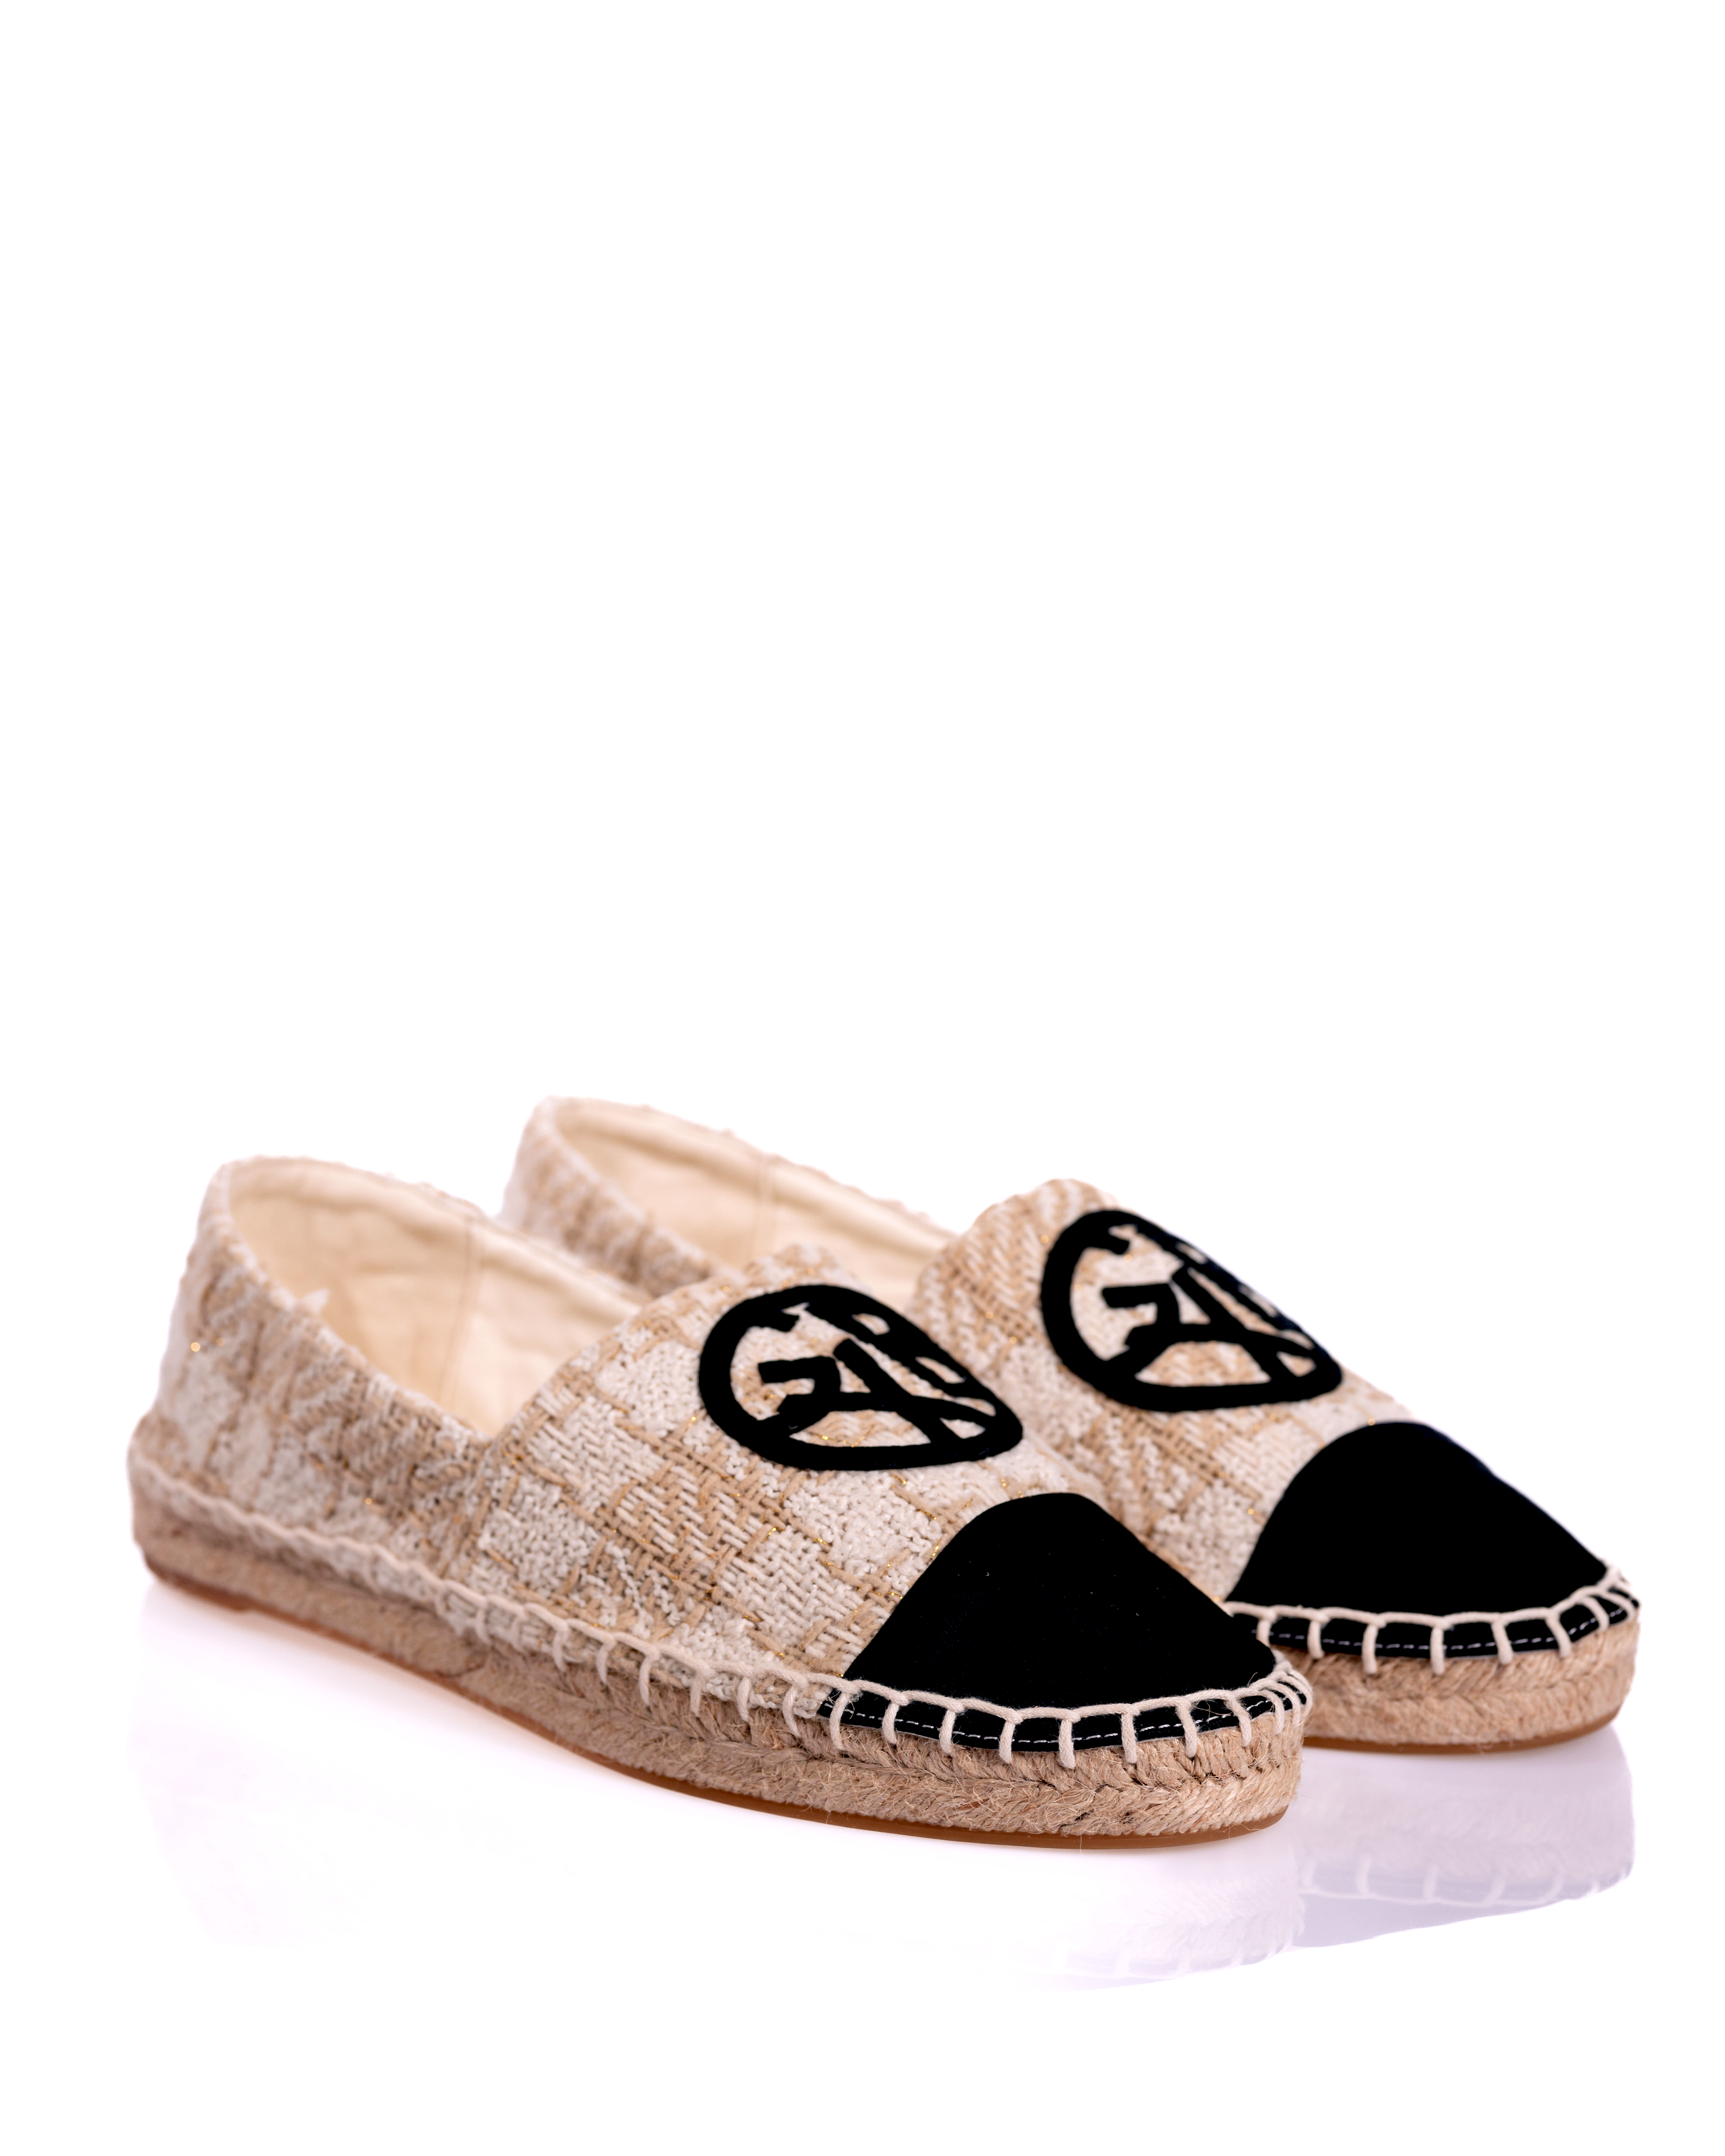 Authentic Chanel BeigeBlack Canvas Stitched Espadrilles Shoes Size 35   Paris Station Shop